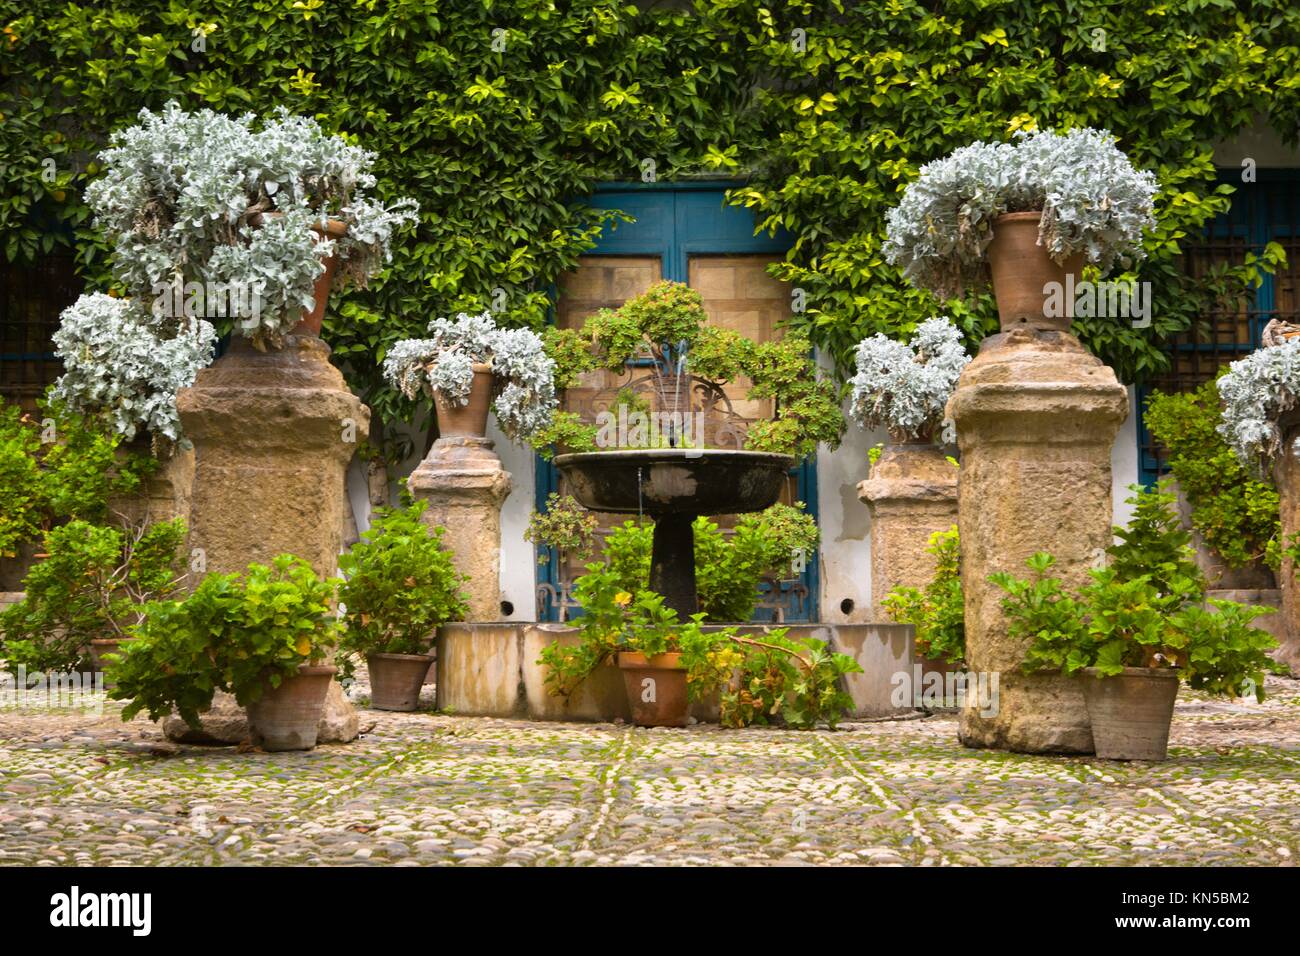 Garten im Innenhof eines typischen Hauses in Cordoba, Spanien. Stockfoto